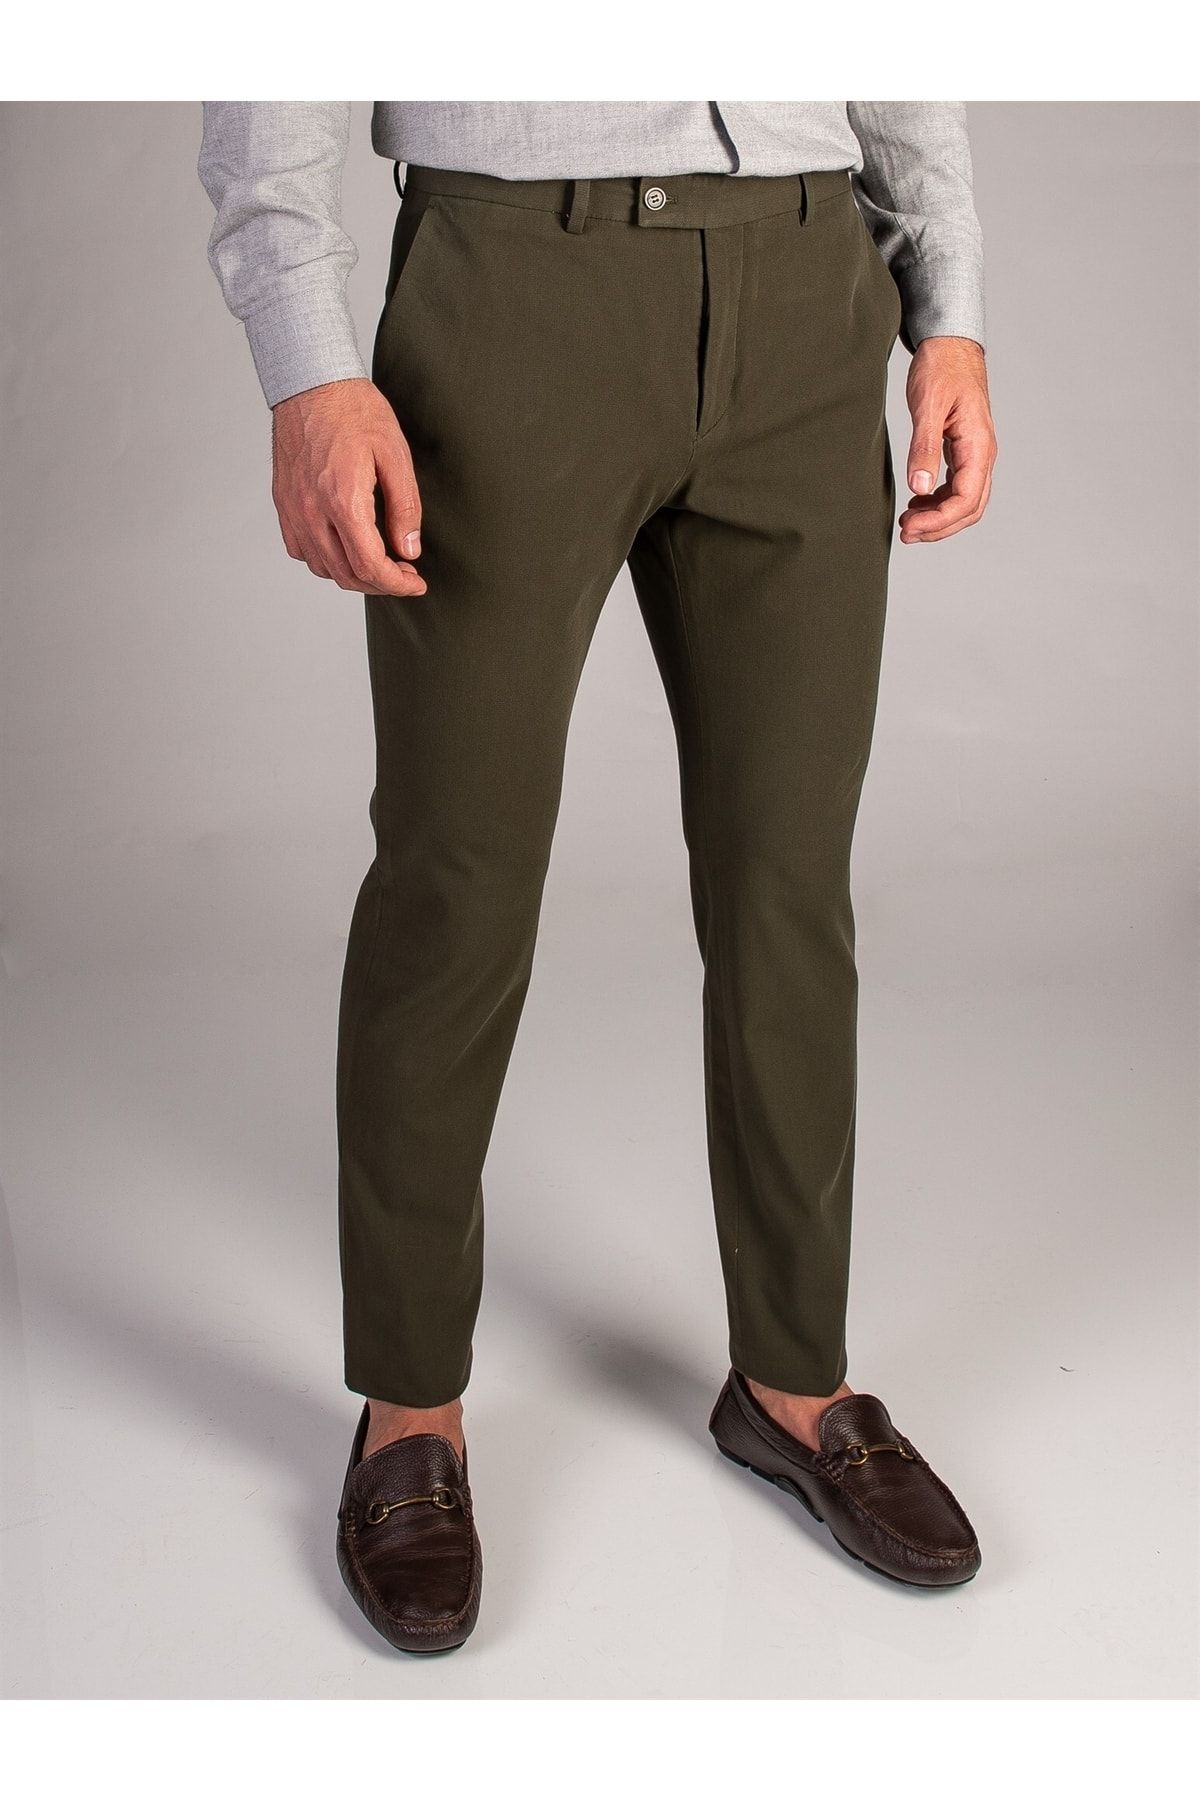 Dufy Haki Armür Pamuk Likra Karışımlı Erkek Pantolon - Slim Fit